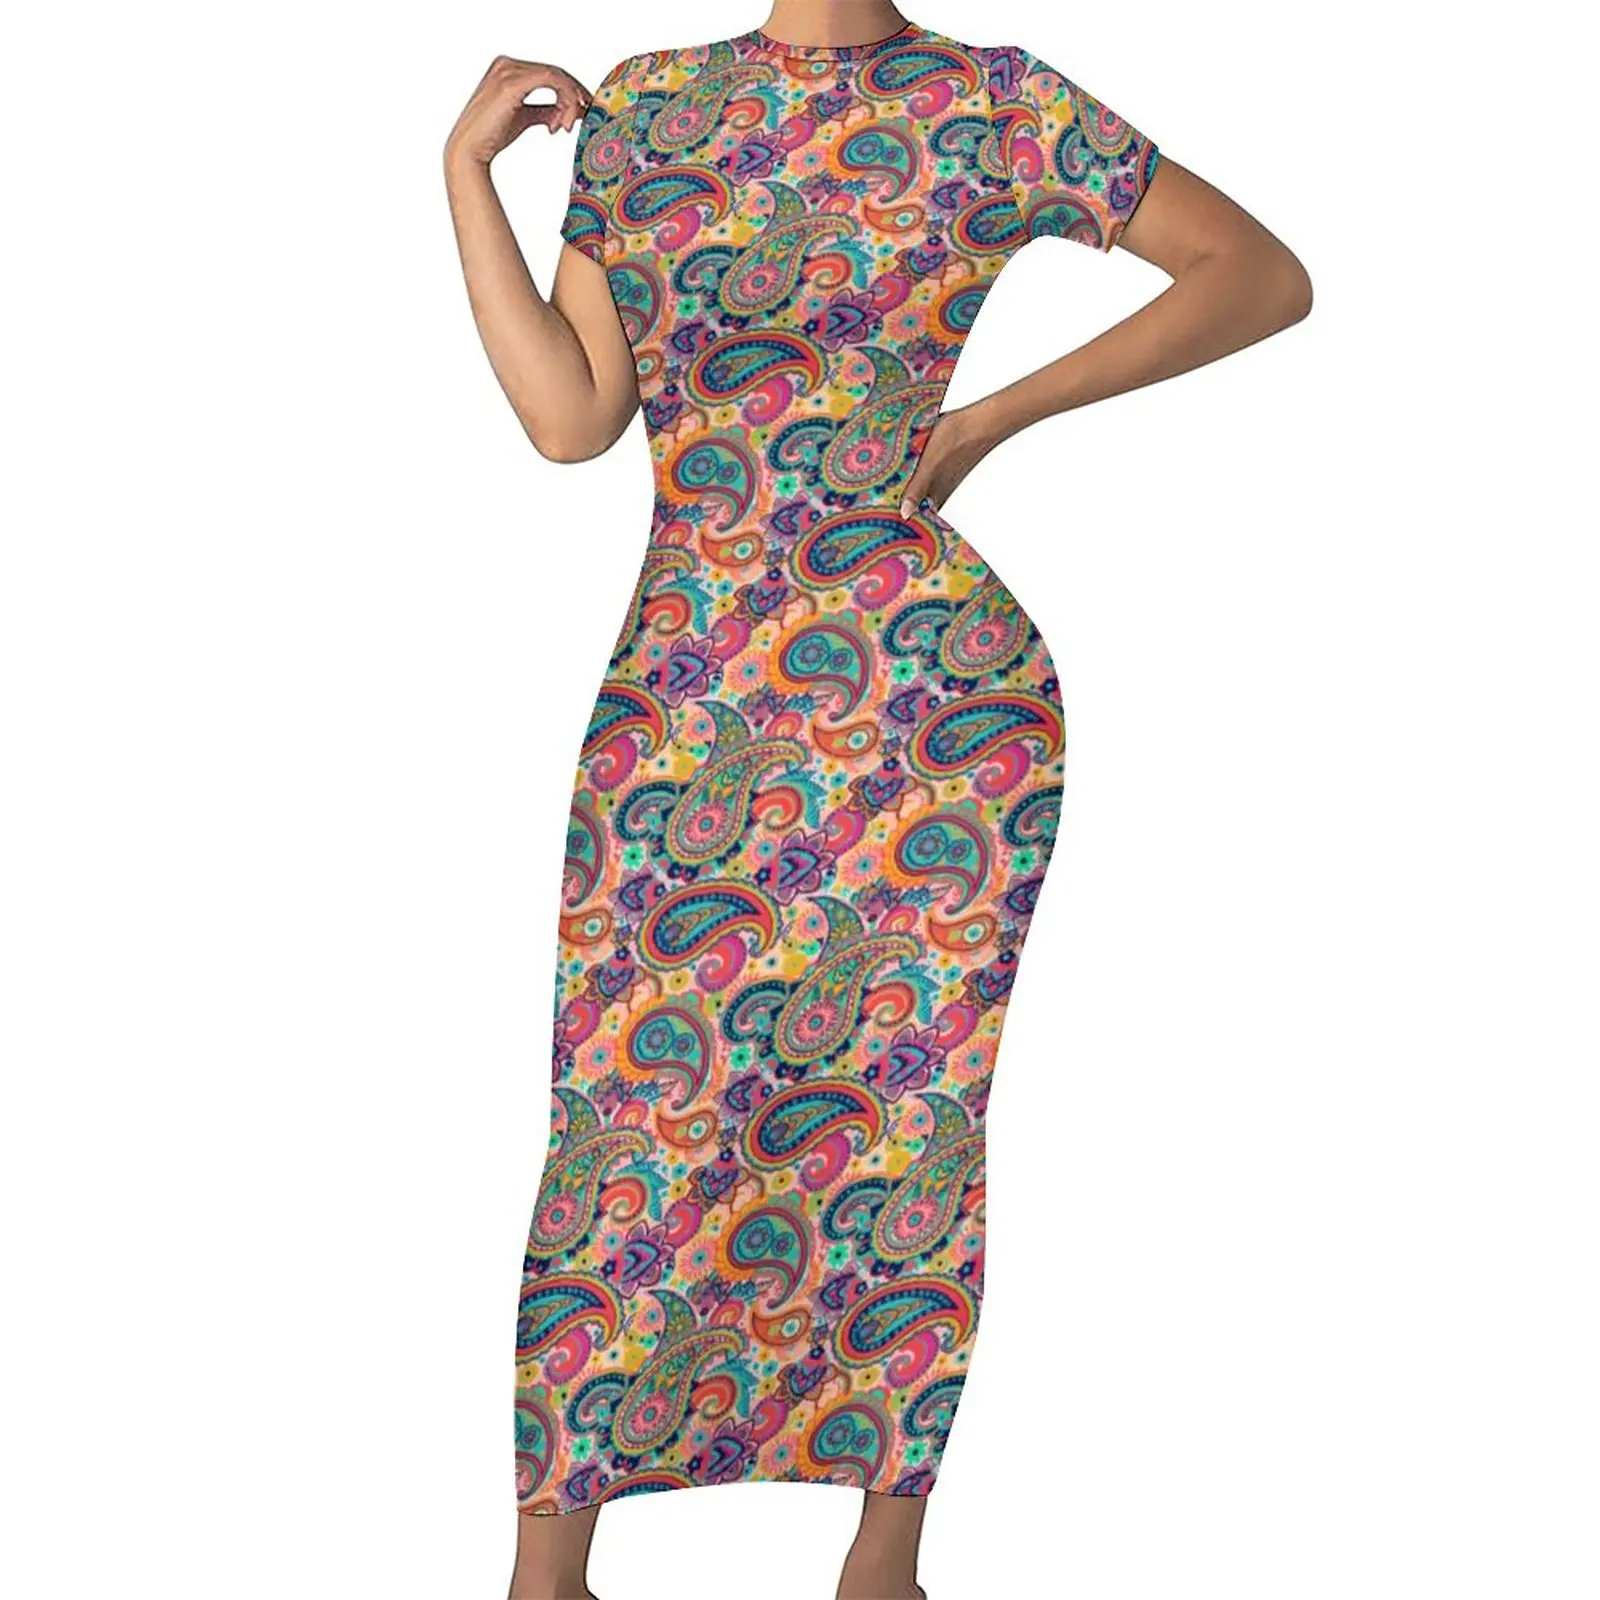 

Женское платье с принтом пейсли, разноцветное облегающее платье в этническом стиле с цветочным принтом, праздничные Ретро Платья-макси, Одежда большого размера с графическим принтом